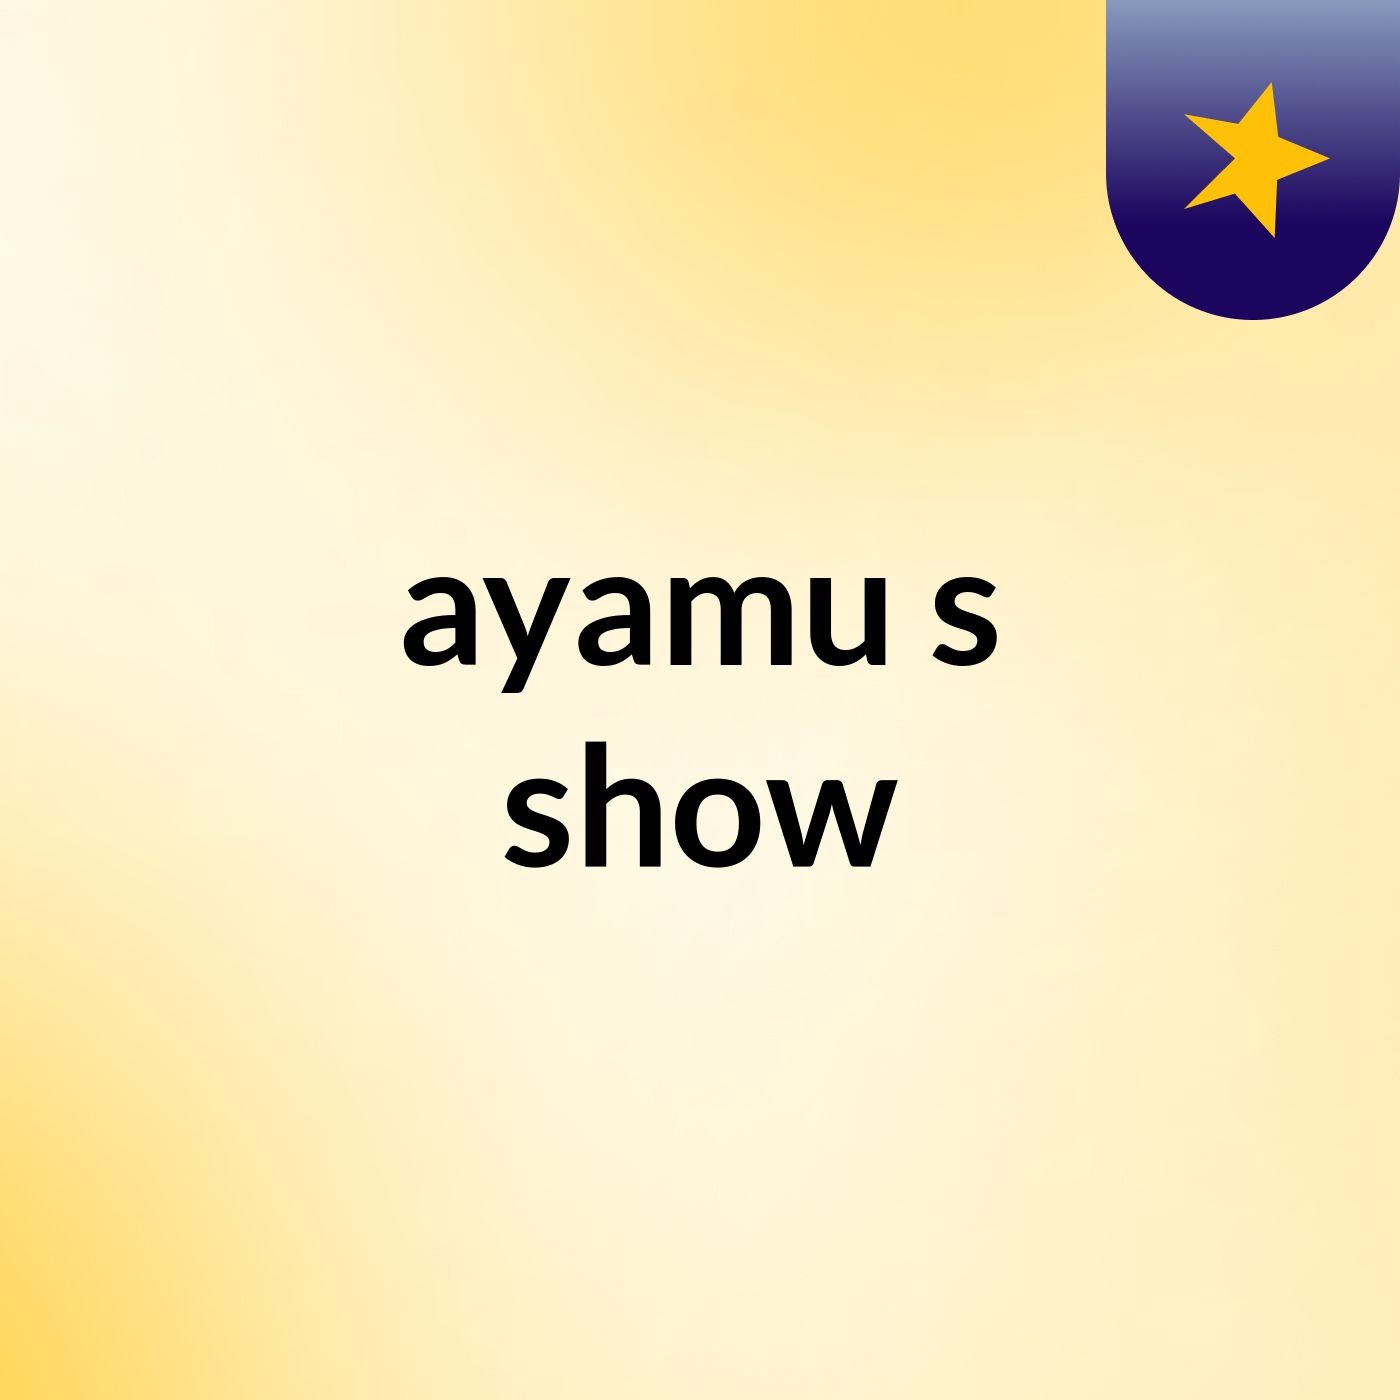 ayamu's show